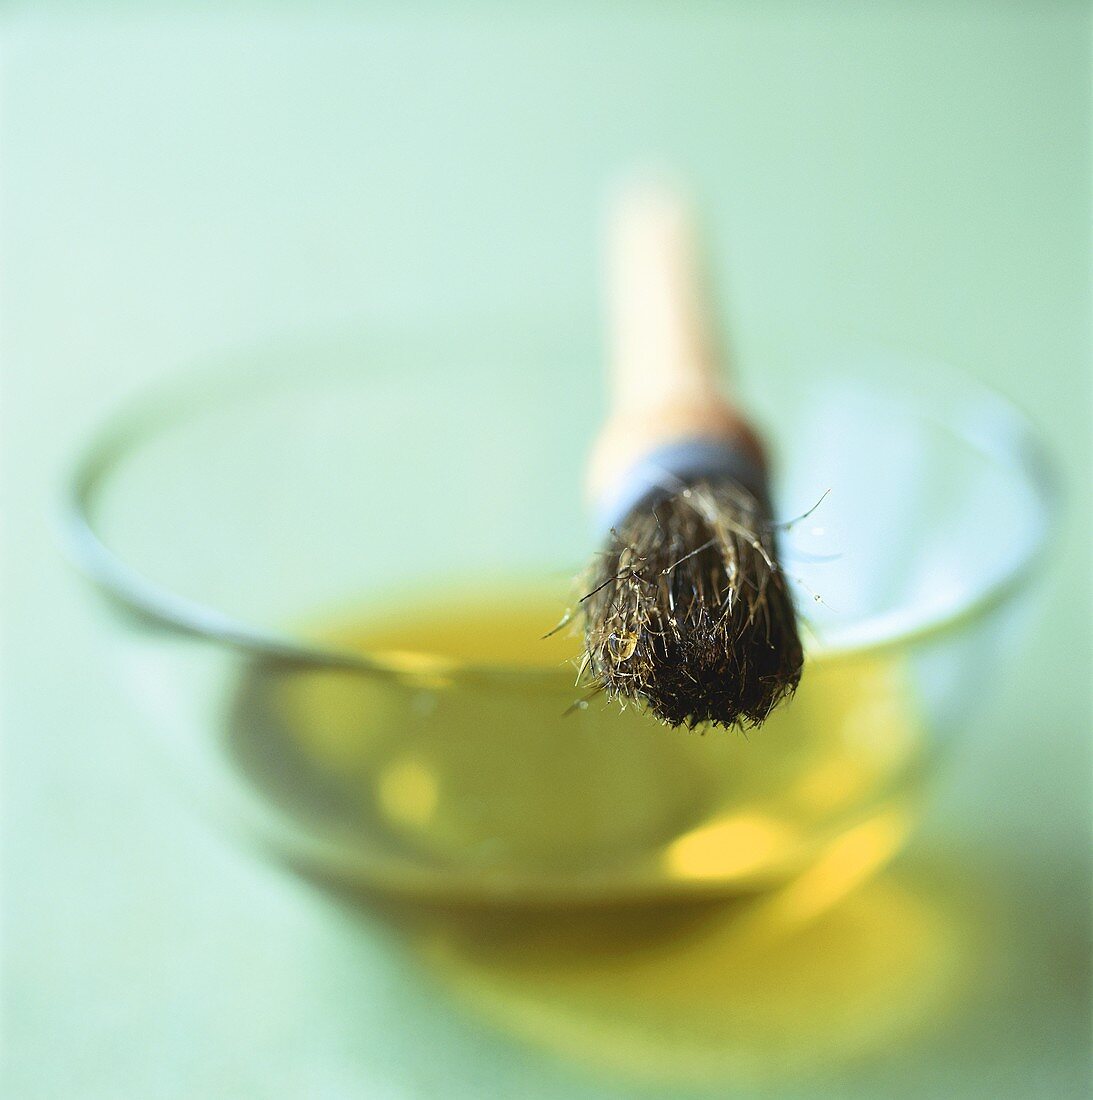 Schälchen mit Olivenöl und Pinsel